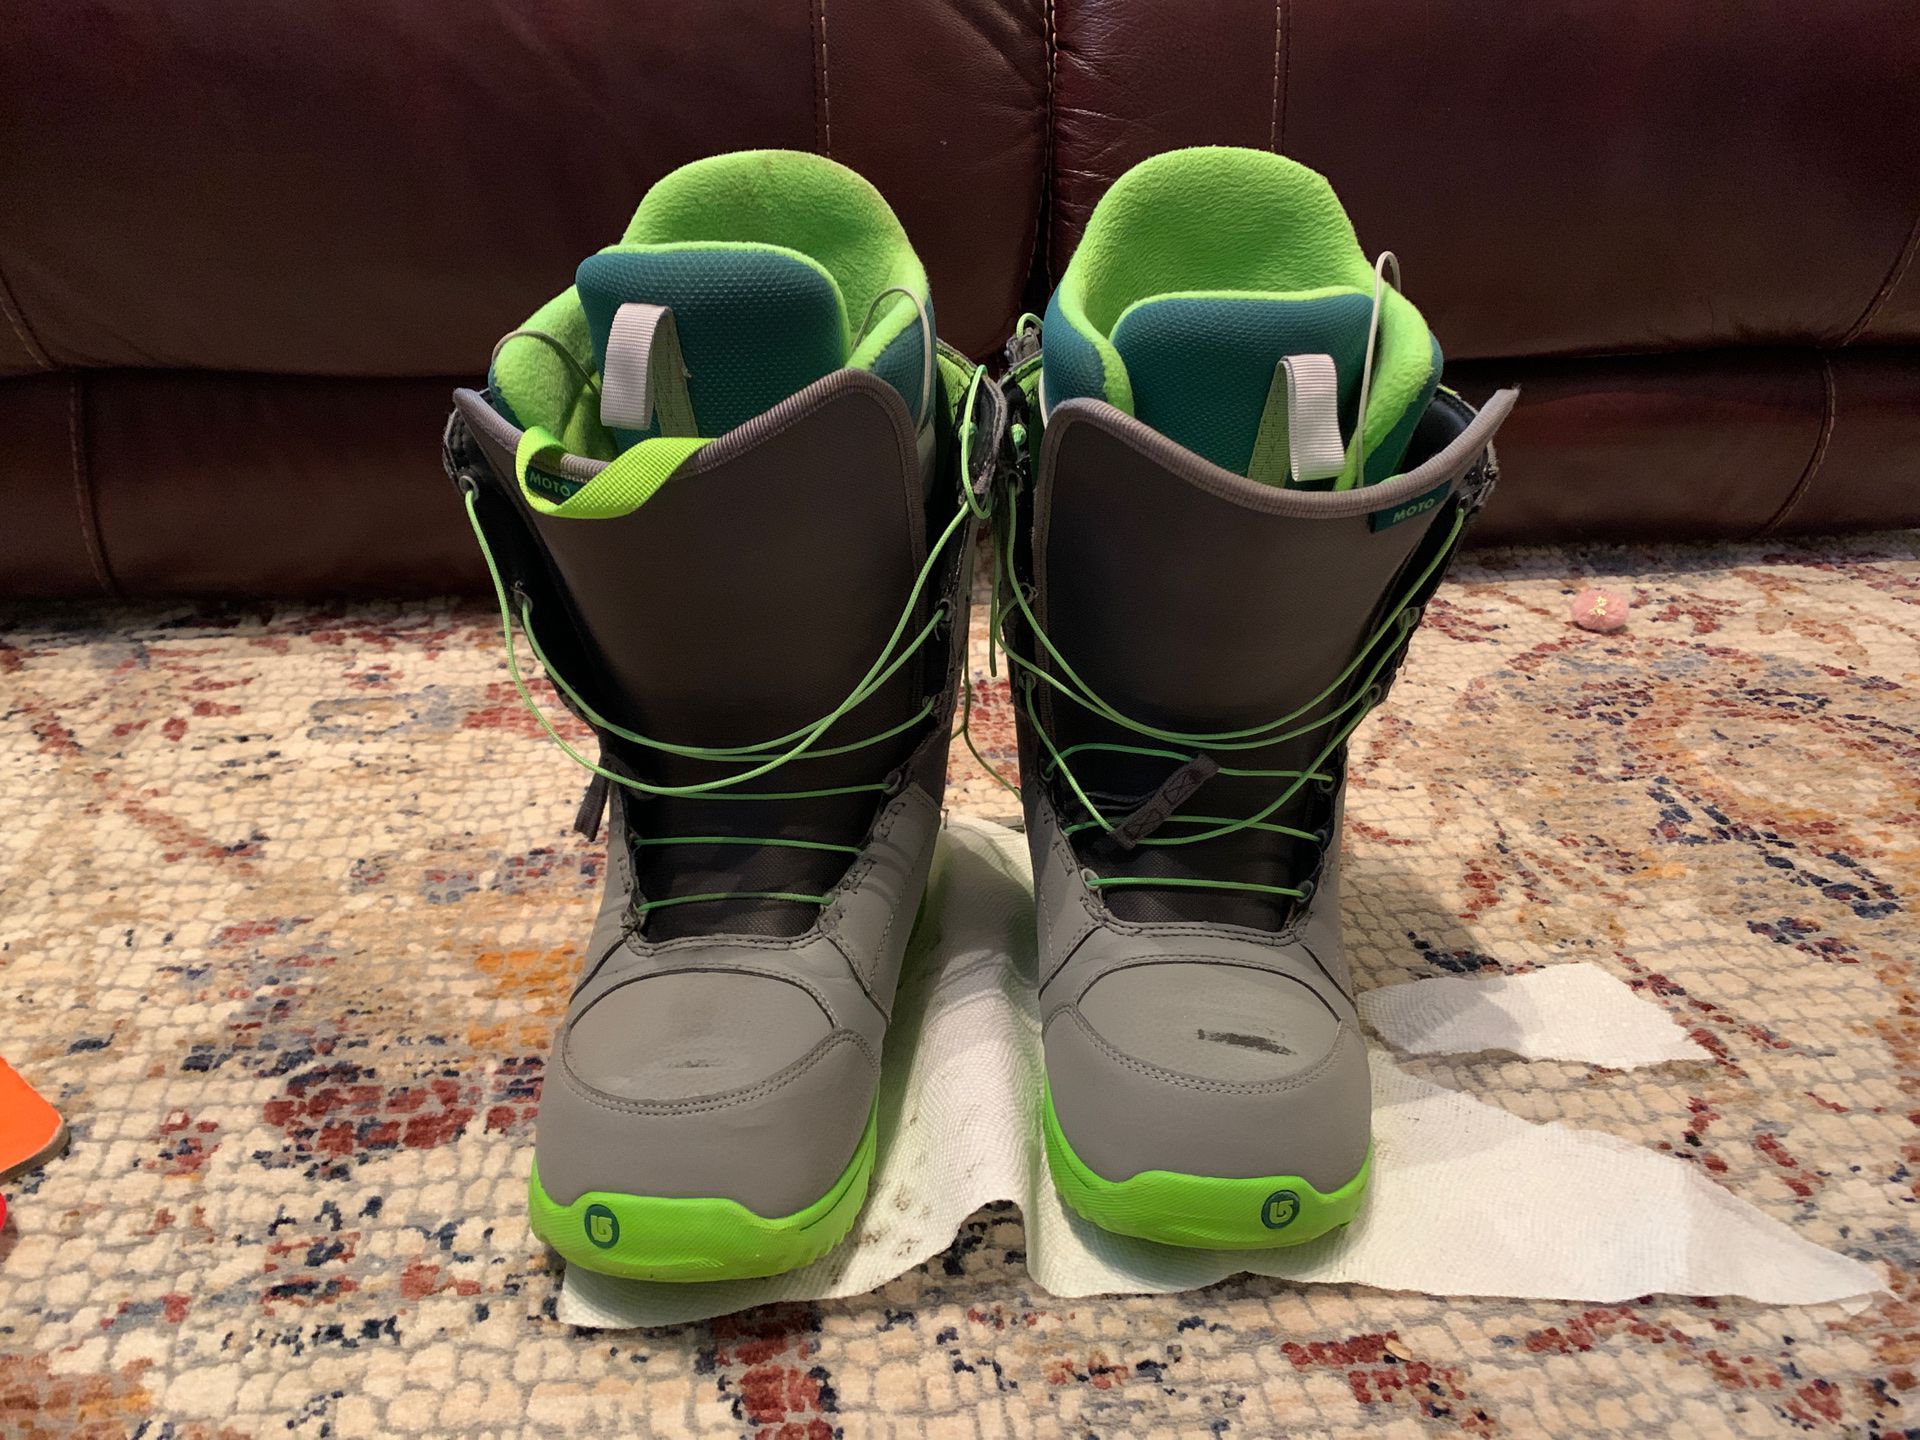 Burton Snowboard boots size 9.5